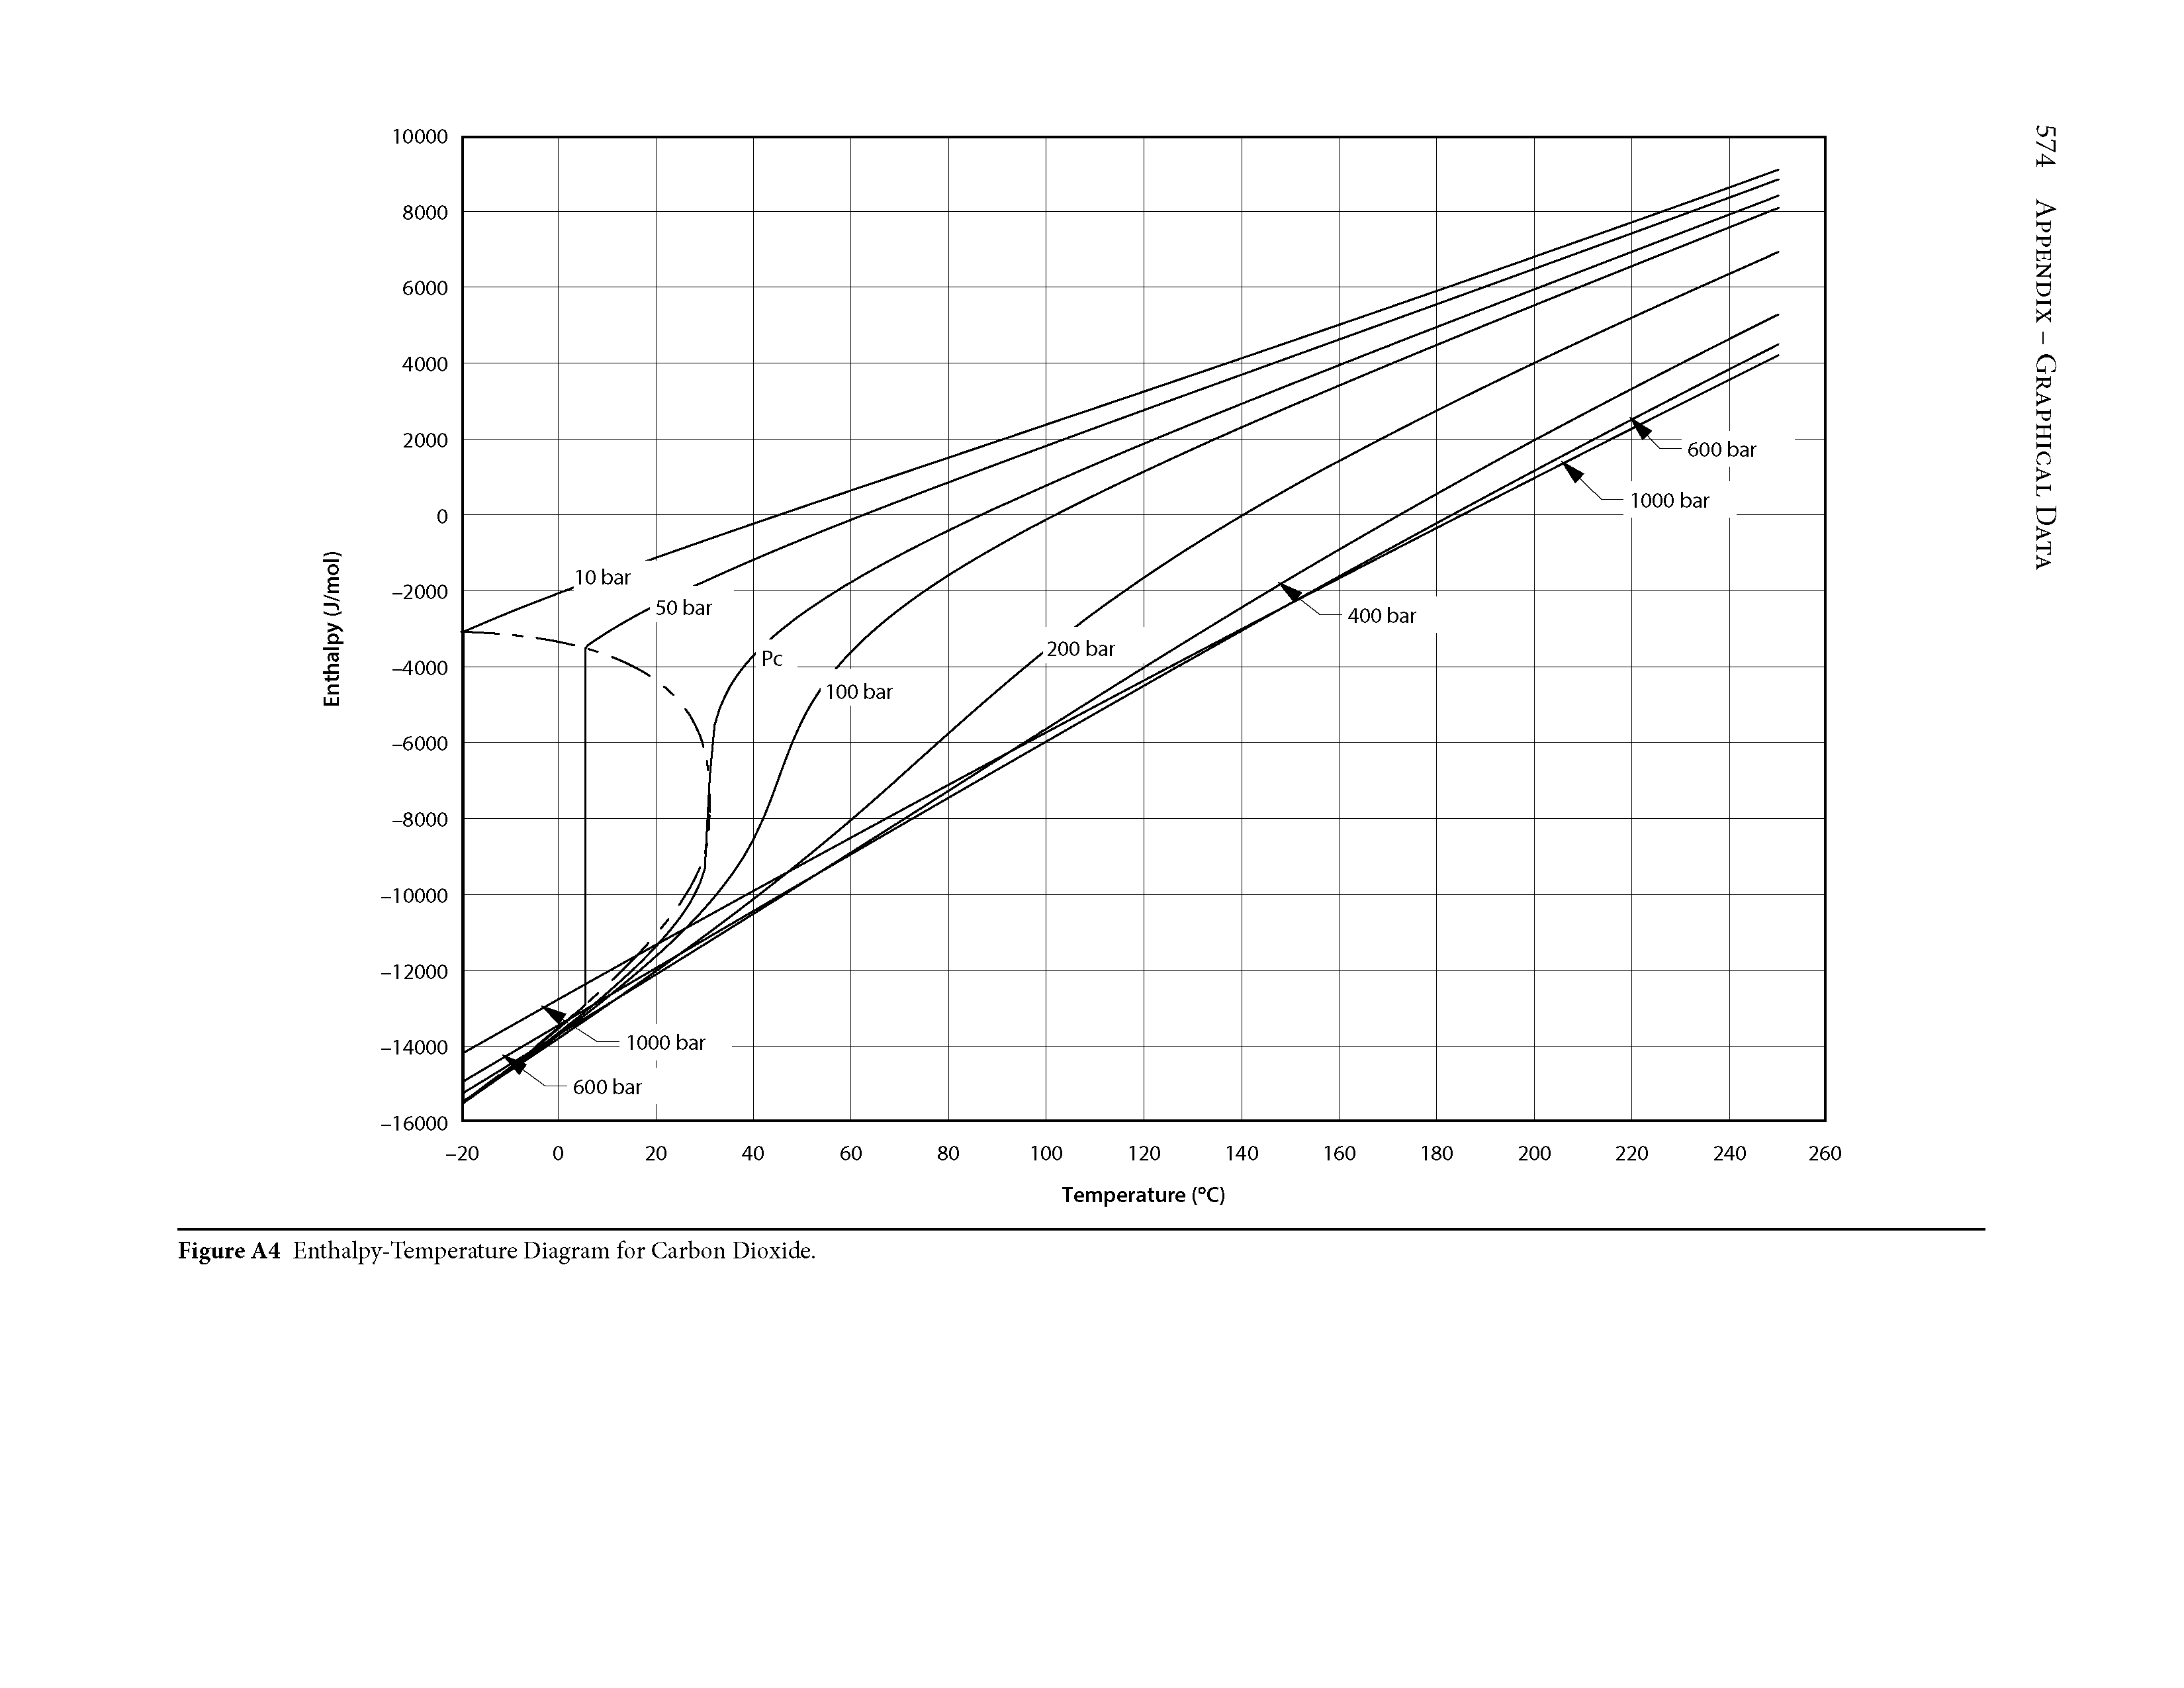 Figure A4 Enthalpy-Temperature Diagram for Carbon Dioxide.